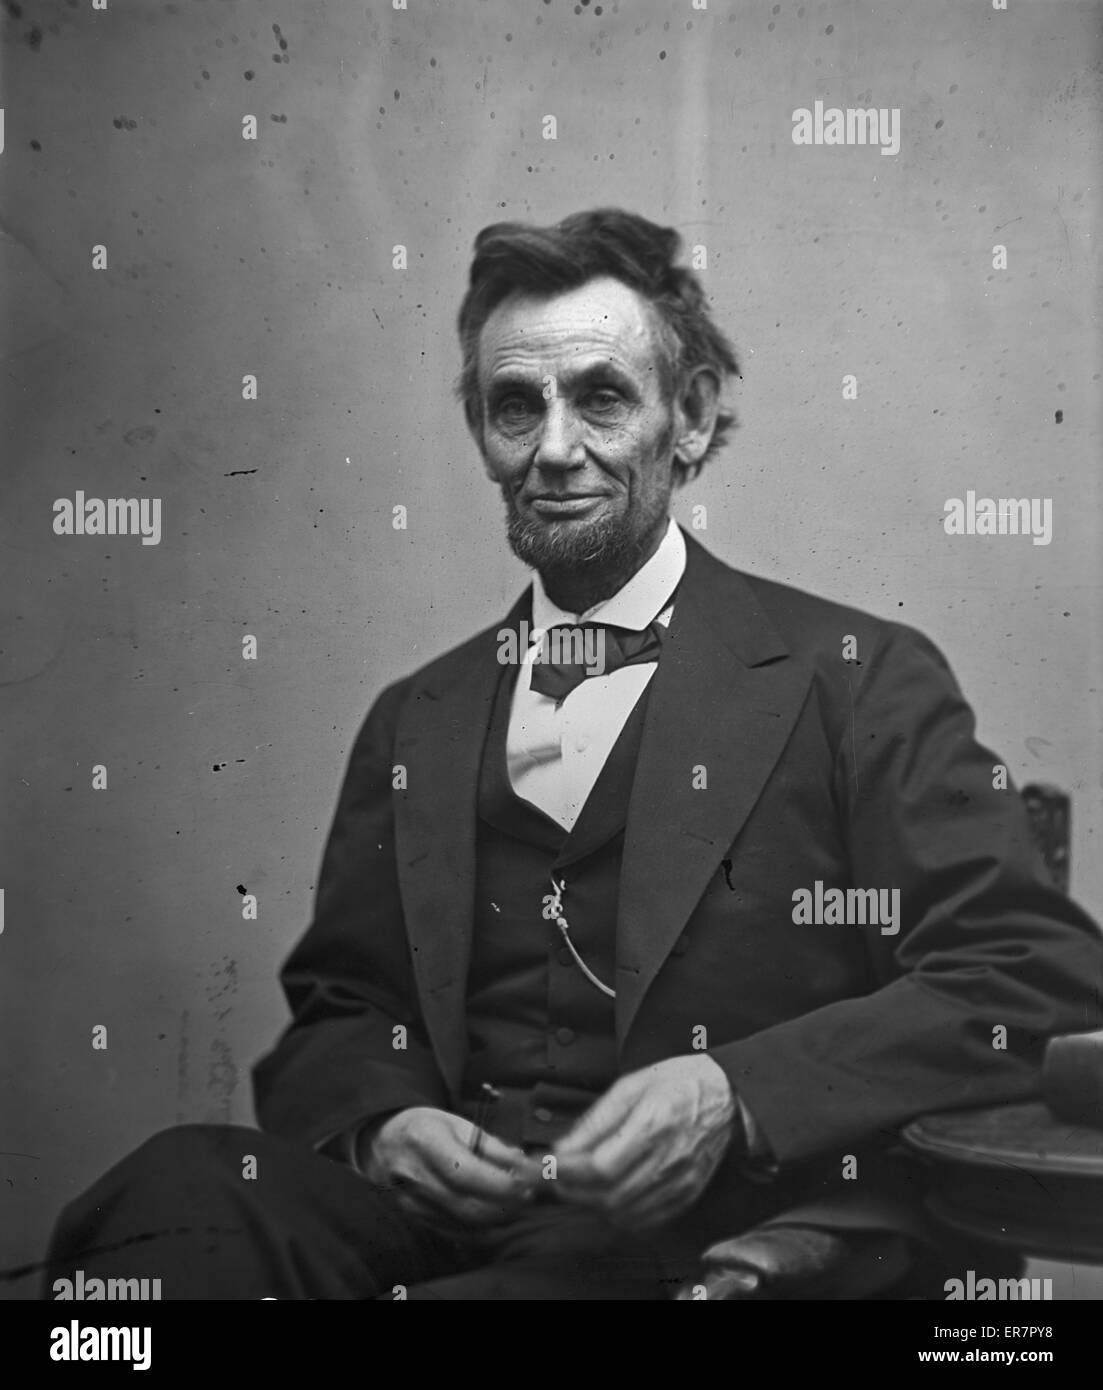 Abraham Lincoln, portrait de trois quarts de longueur, assis et h Banque D'Images